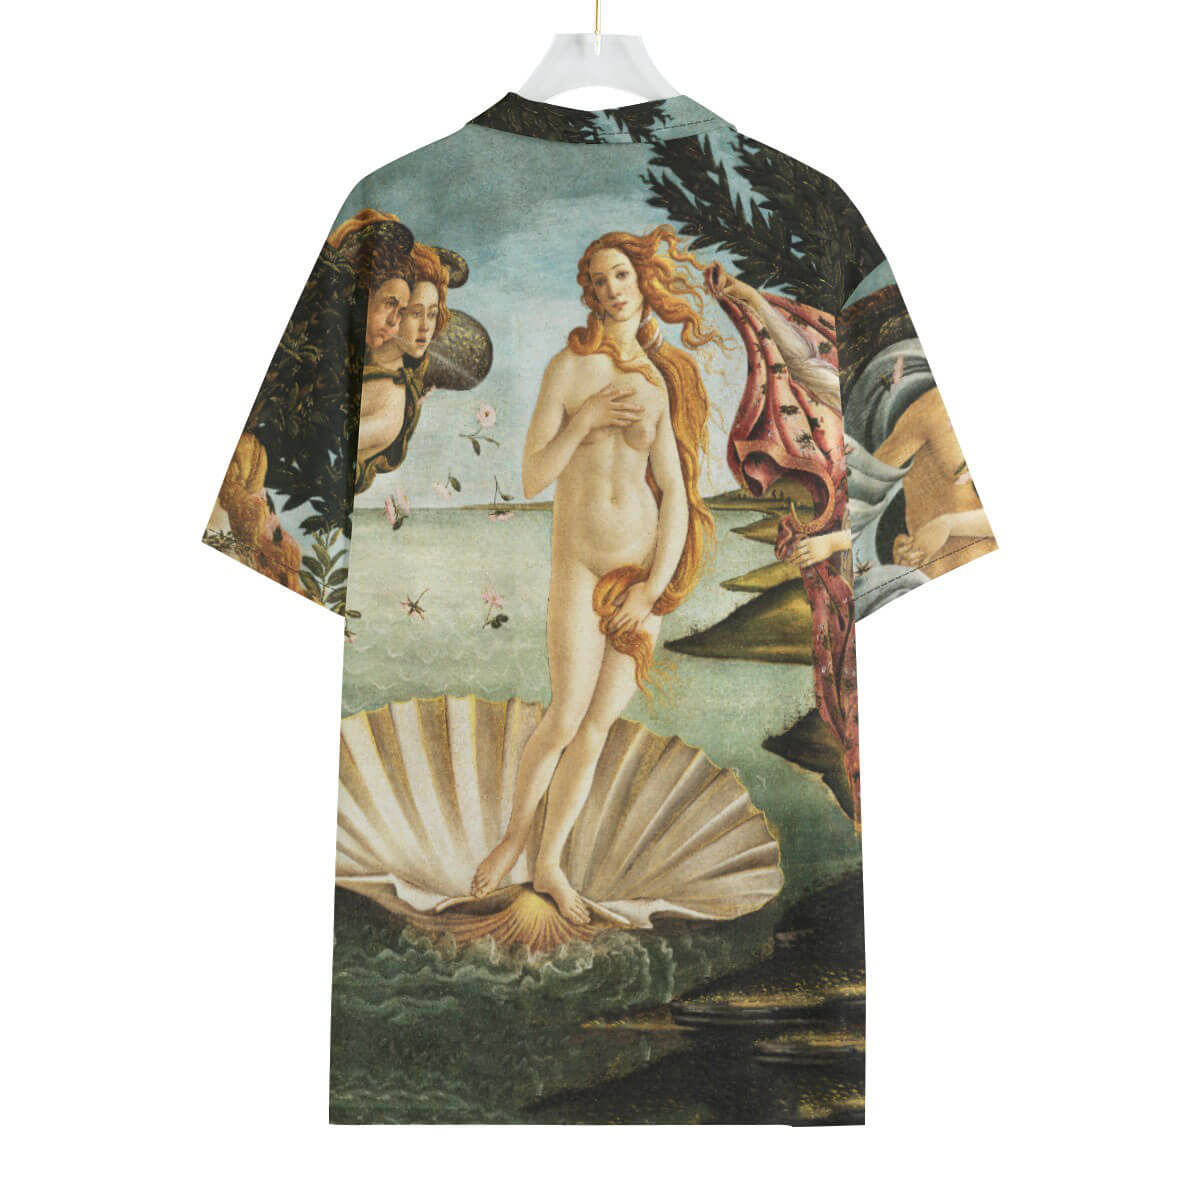 Full-length view of model in Renaissance art Hawaiian shirt